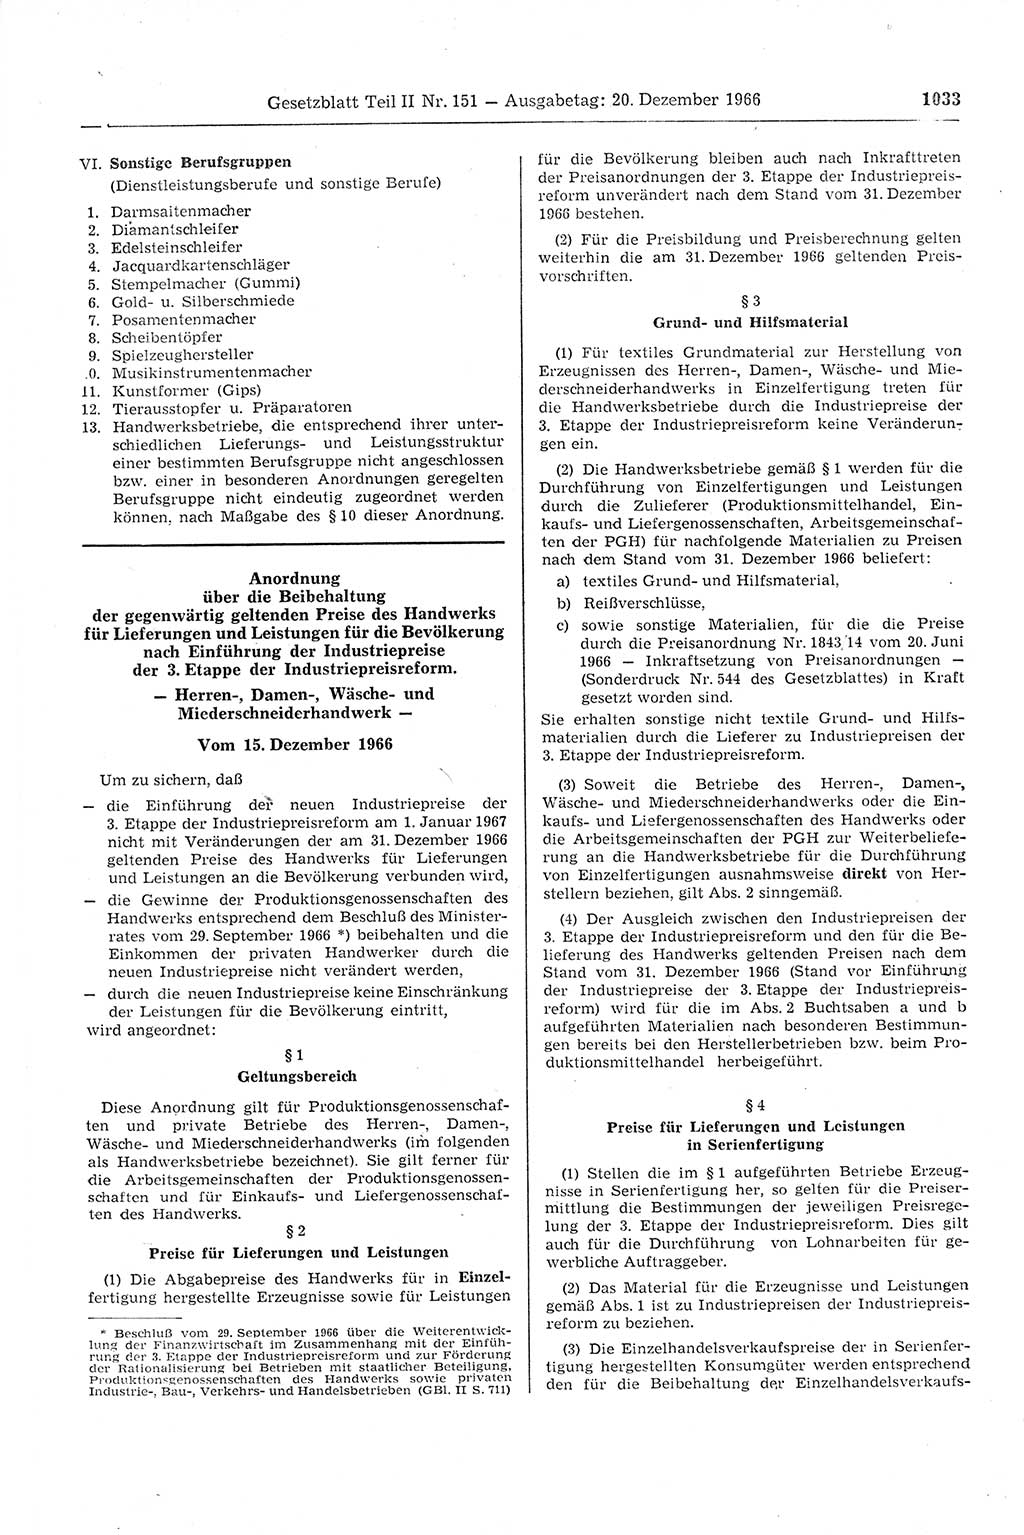 Gesetzblatt (GBl.) der Deutschen Demokratischen Republik (DDR) Teil ⅠⅠ 1966, Seite 1033 (GBl. DDR ⅠⅠ 1966, S. 1033)